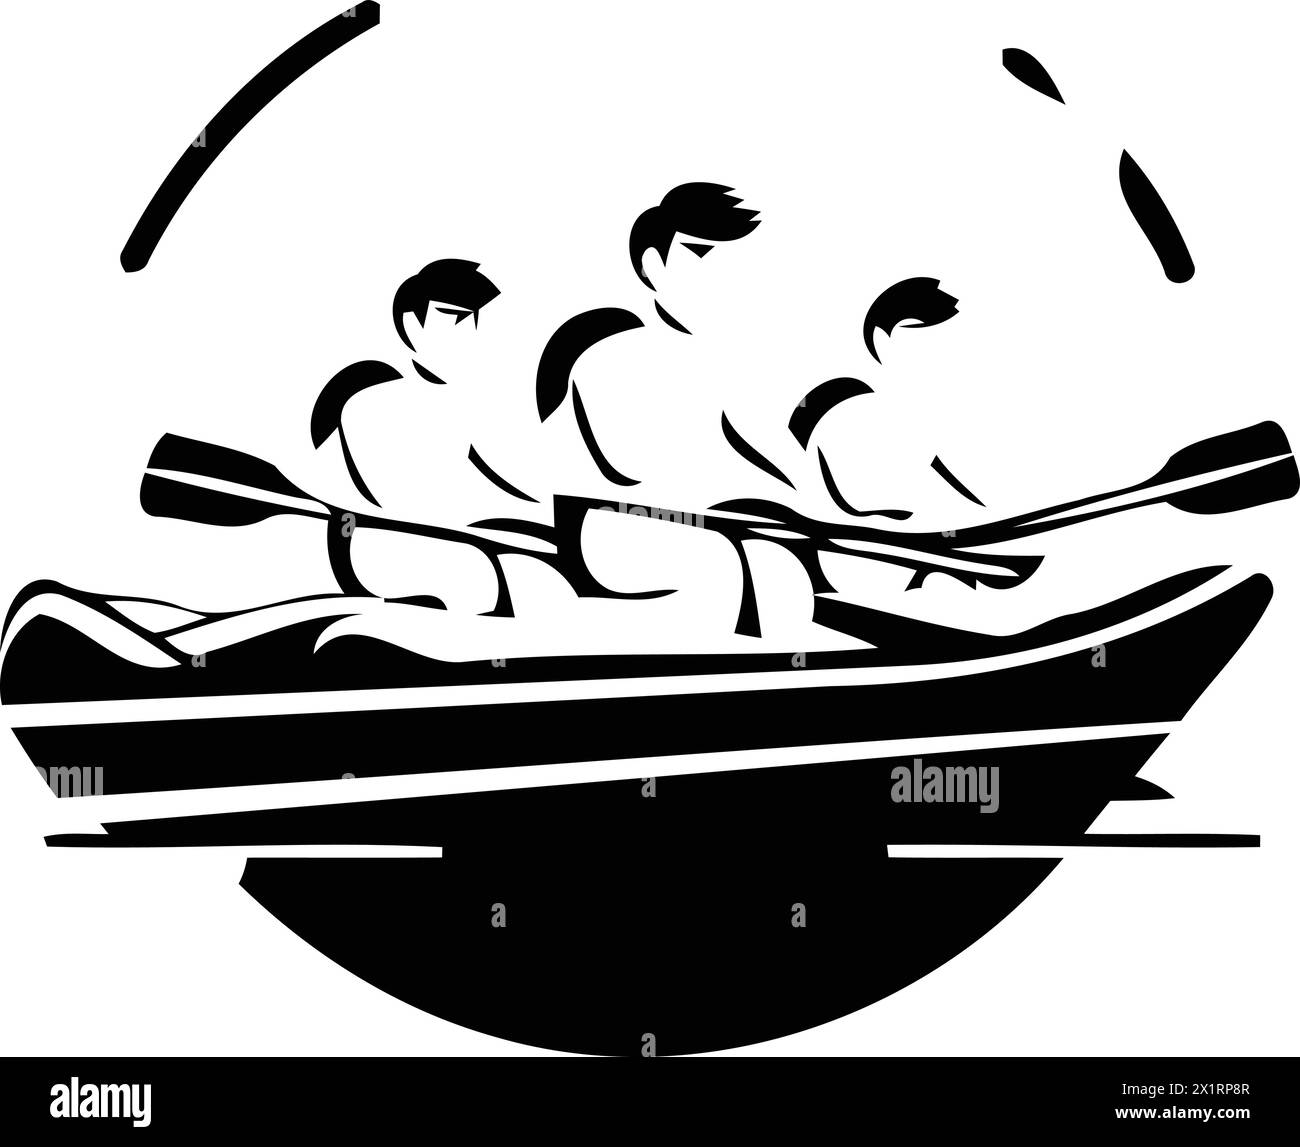 Una squadra di persone che canta in una barca. Illustrazione vettoriale in stile piatto. Illustrazione Vettoriale